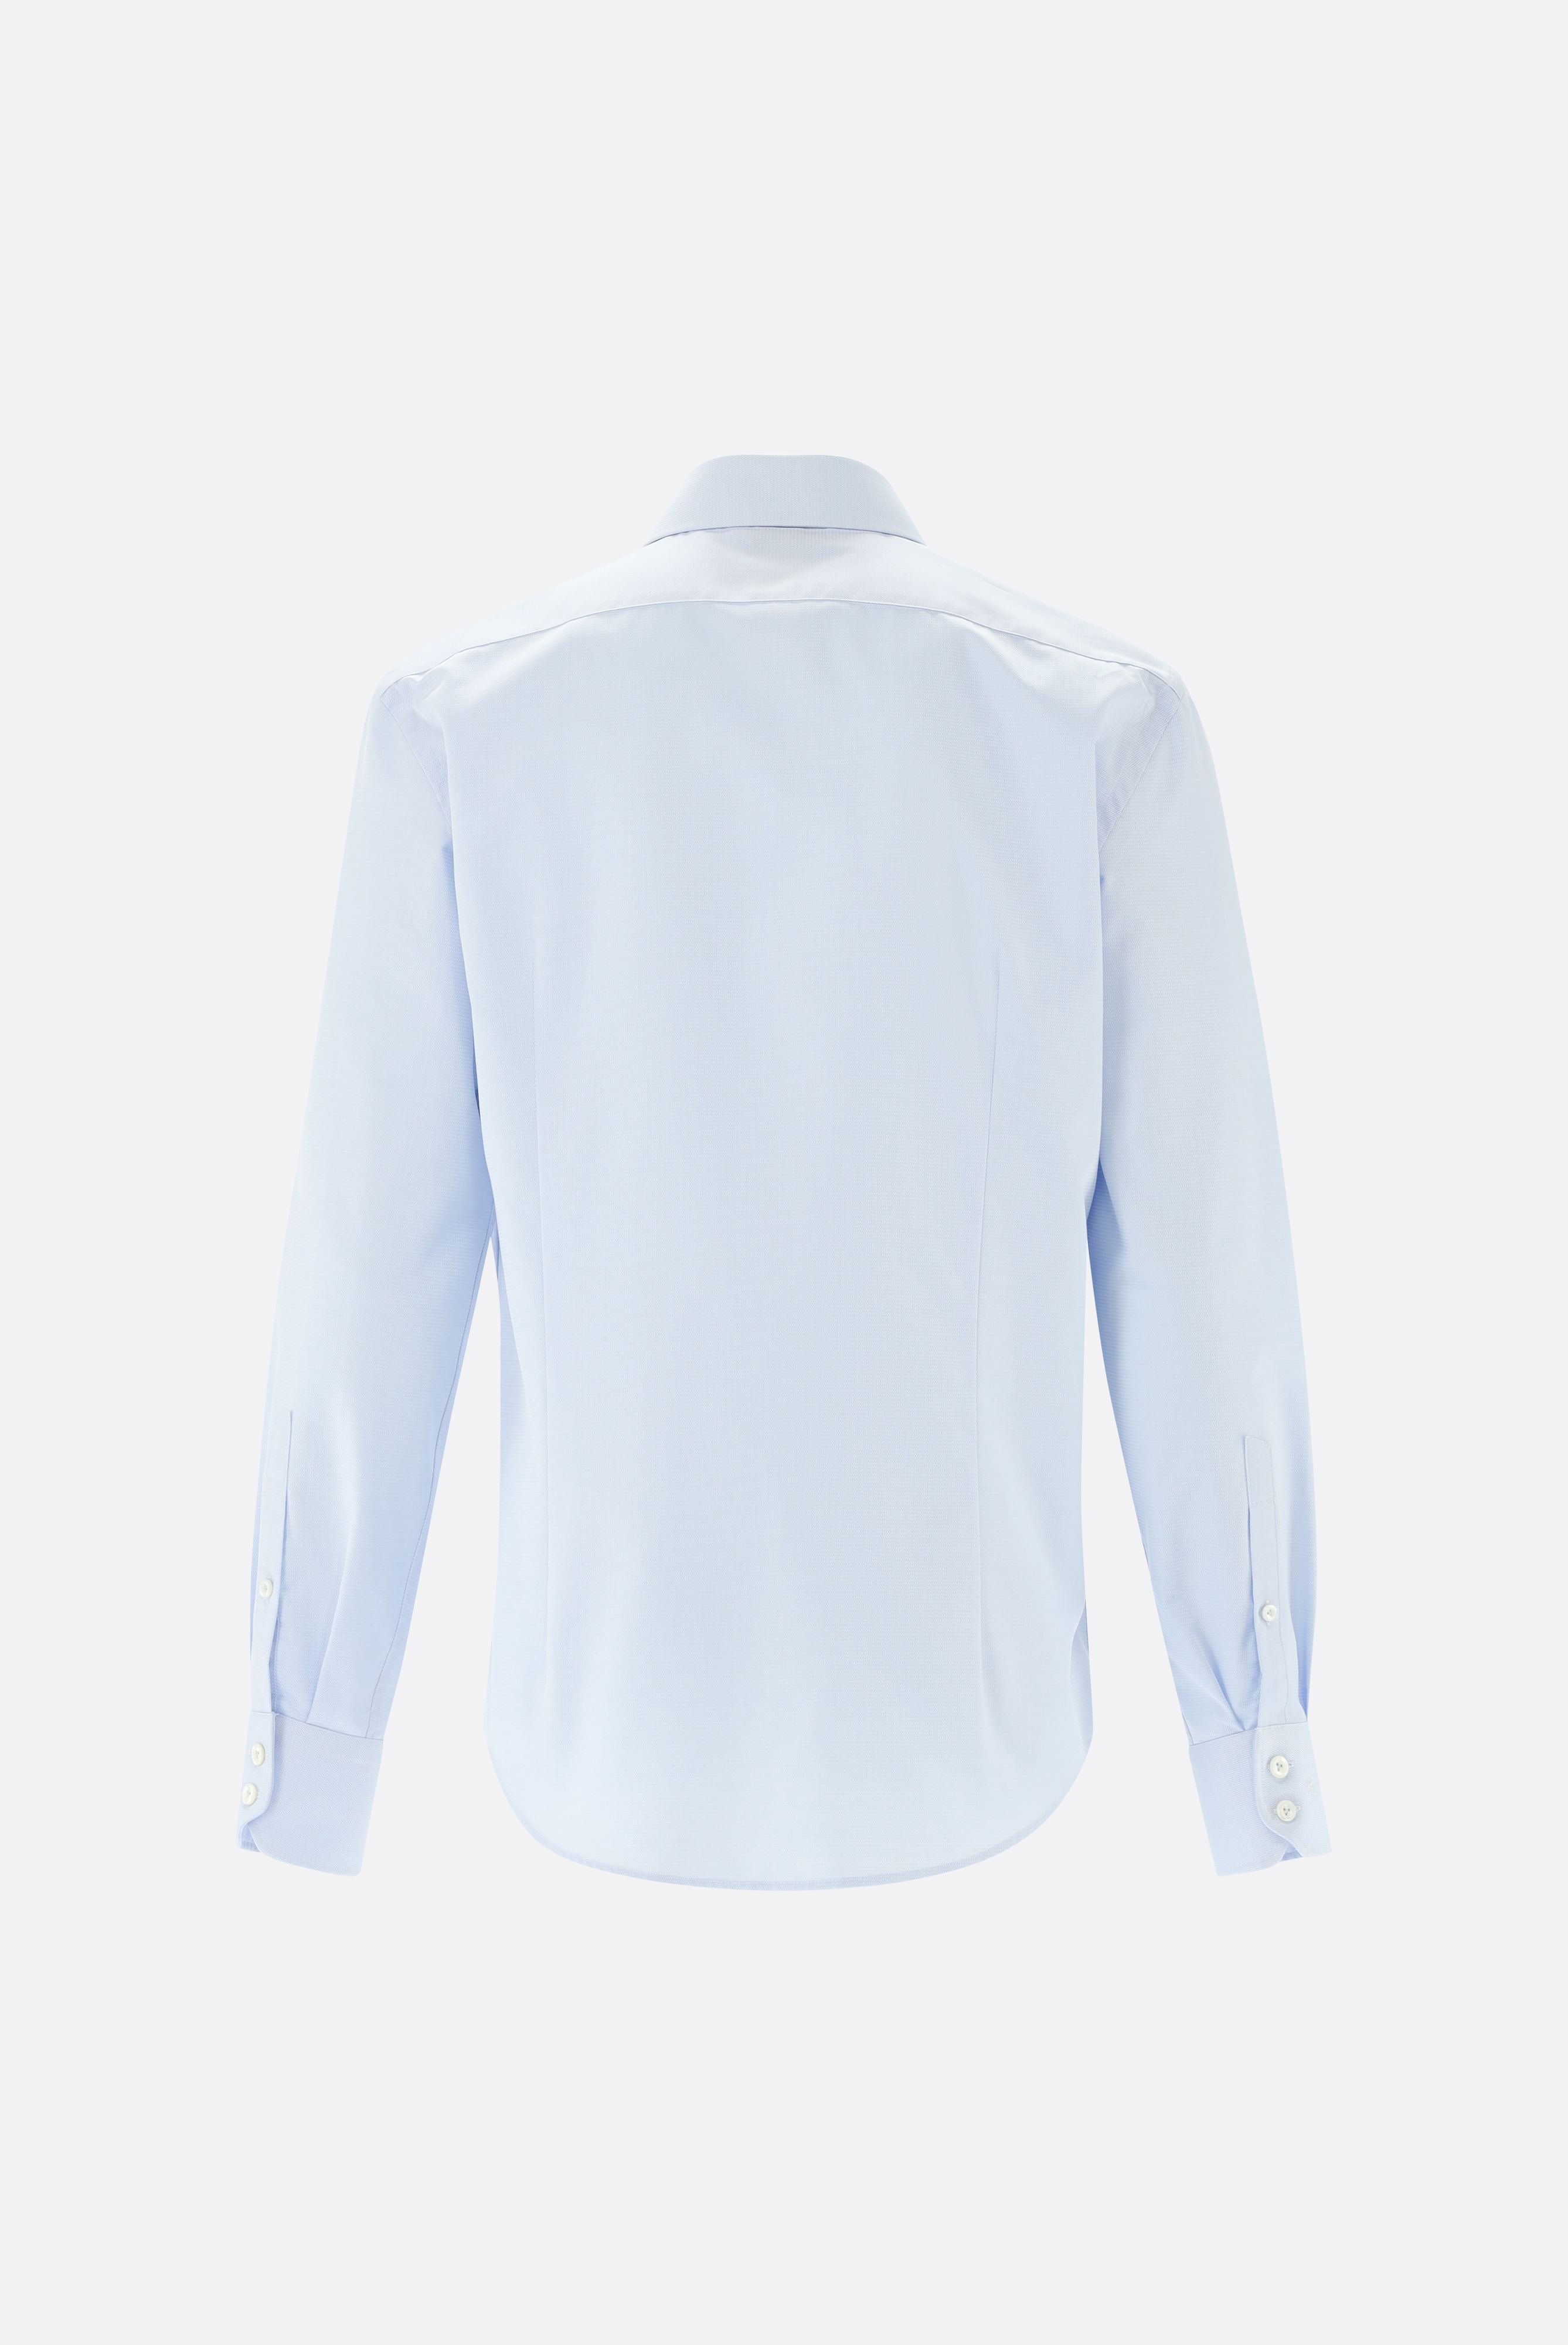 Bügelleichte Hemden+Bügelfreies Twil Hemd mit Struktur Tailor Fit+20.2020.BQ.150301.720.39